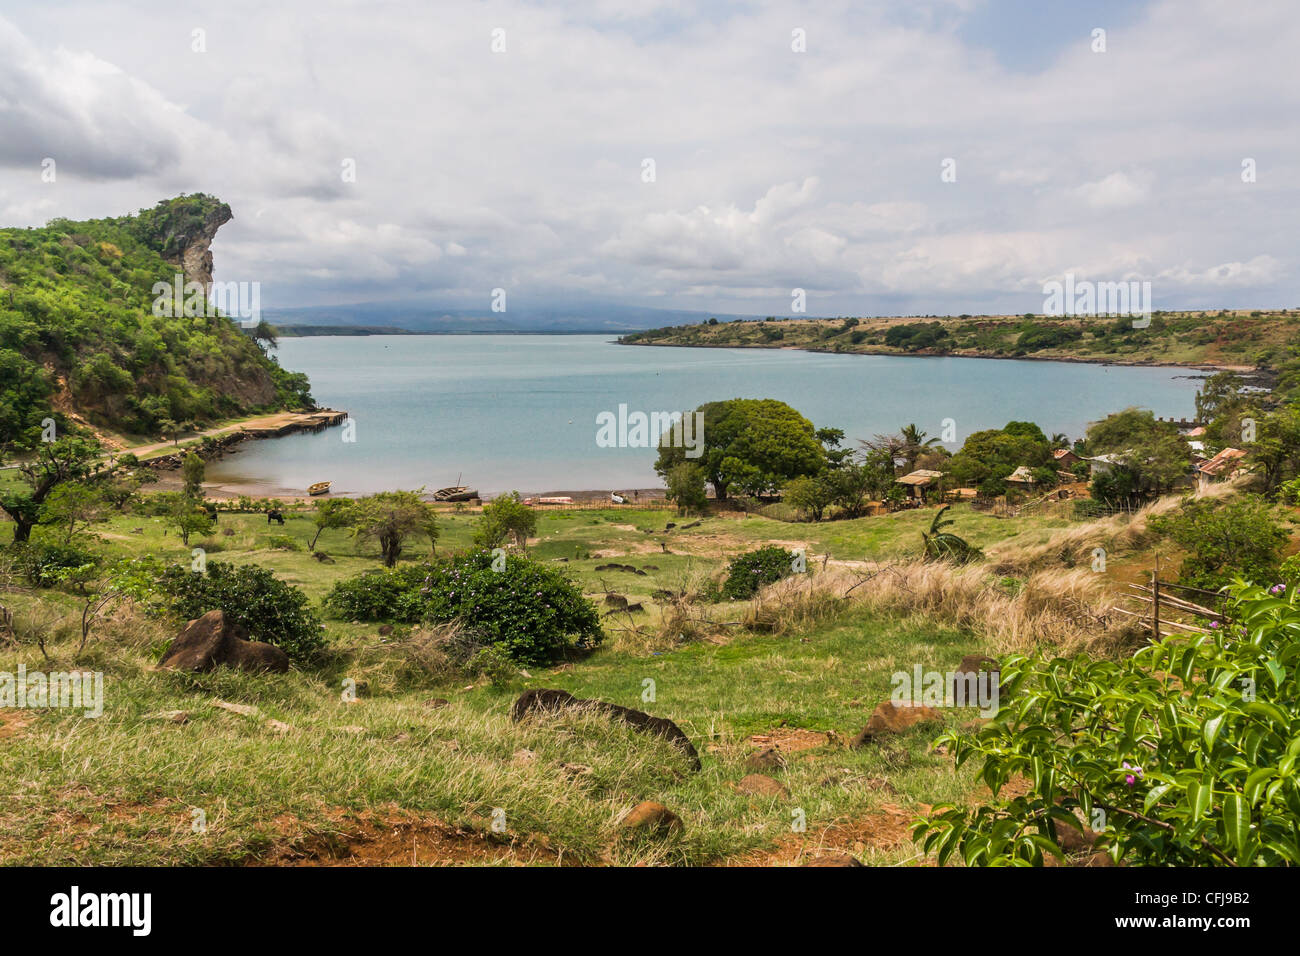 The Antsiranana bay, north of Madagascar Stock Photo